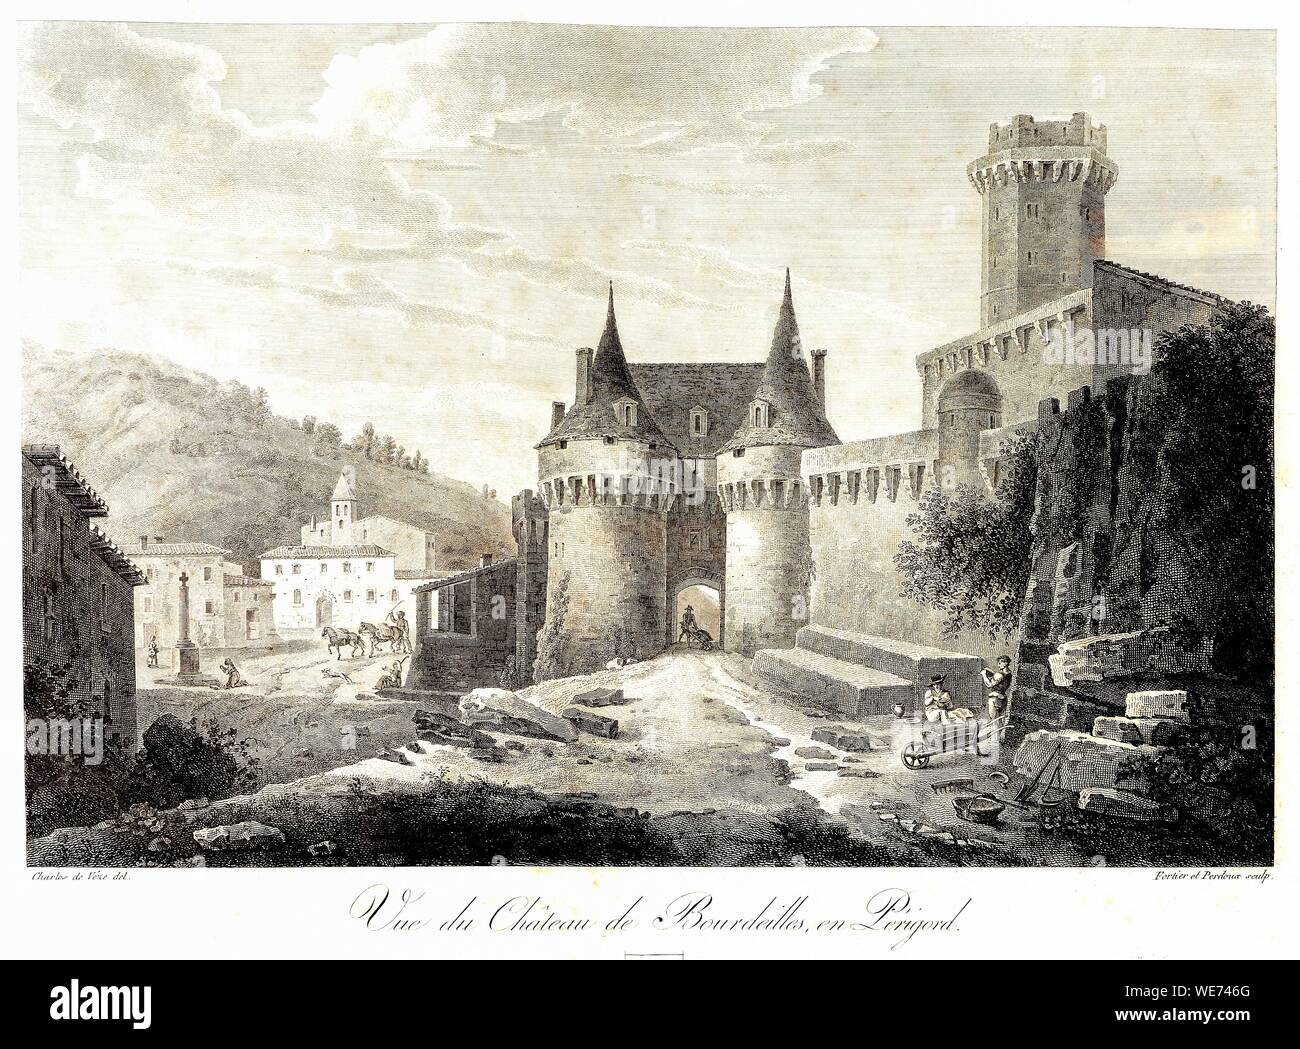 France, Dordogne, Perigord Vert, Bourdeilles, Castle of Bourdeilles, Renaissance castle, engraving Stock Photo